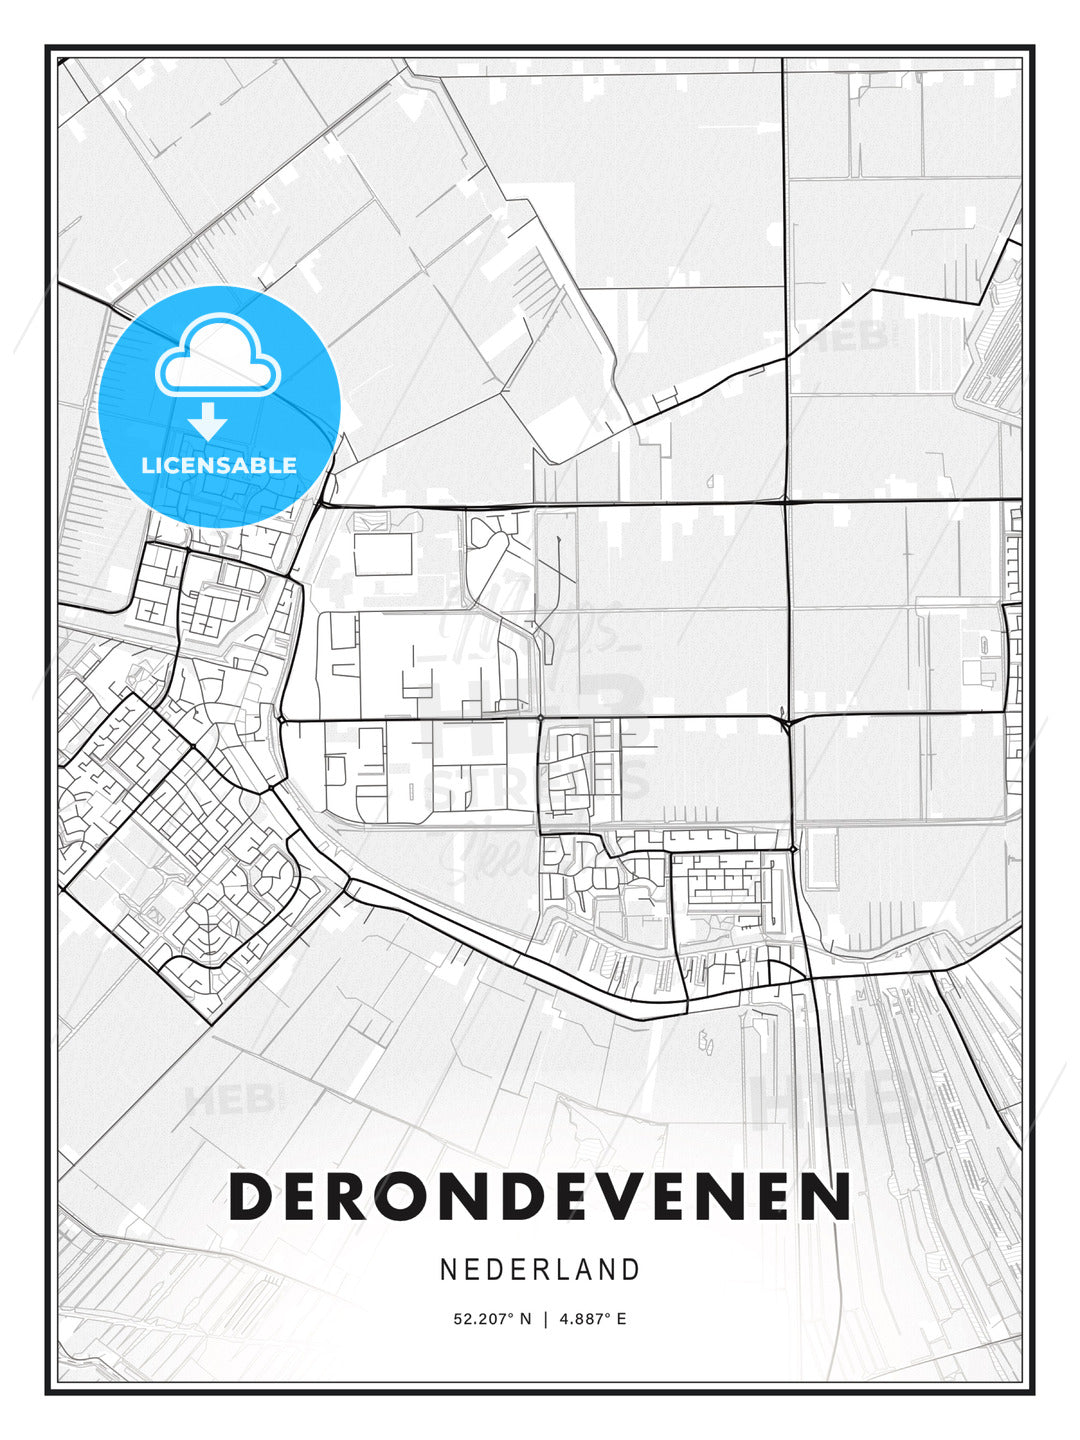 DERONDEVENEN / De Ronde Venen, Netherlands, Modern Print Template in Various Formats - HEBSTREITS Sketches